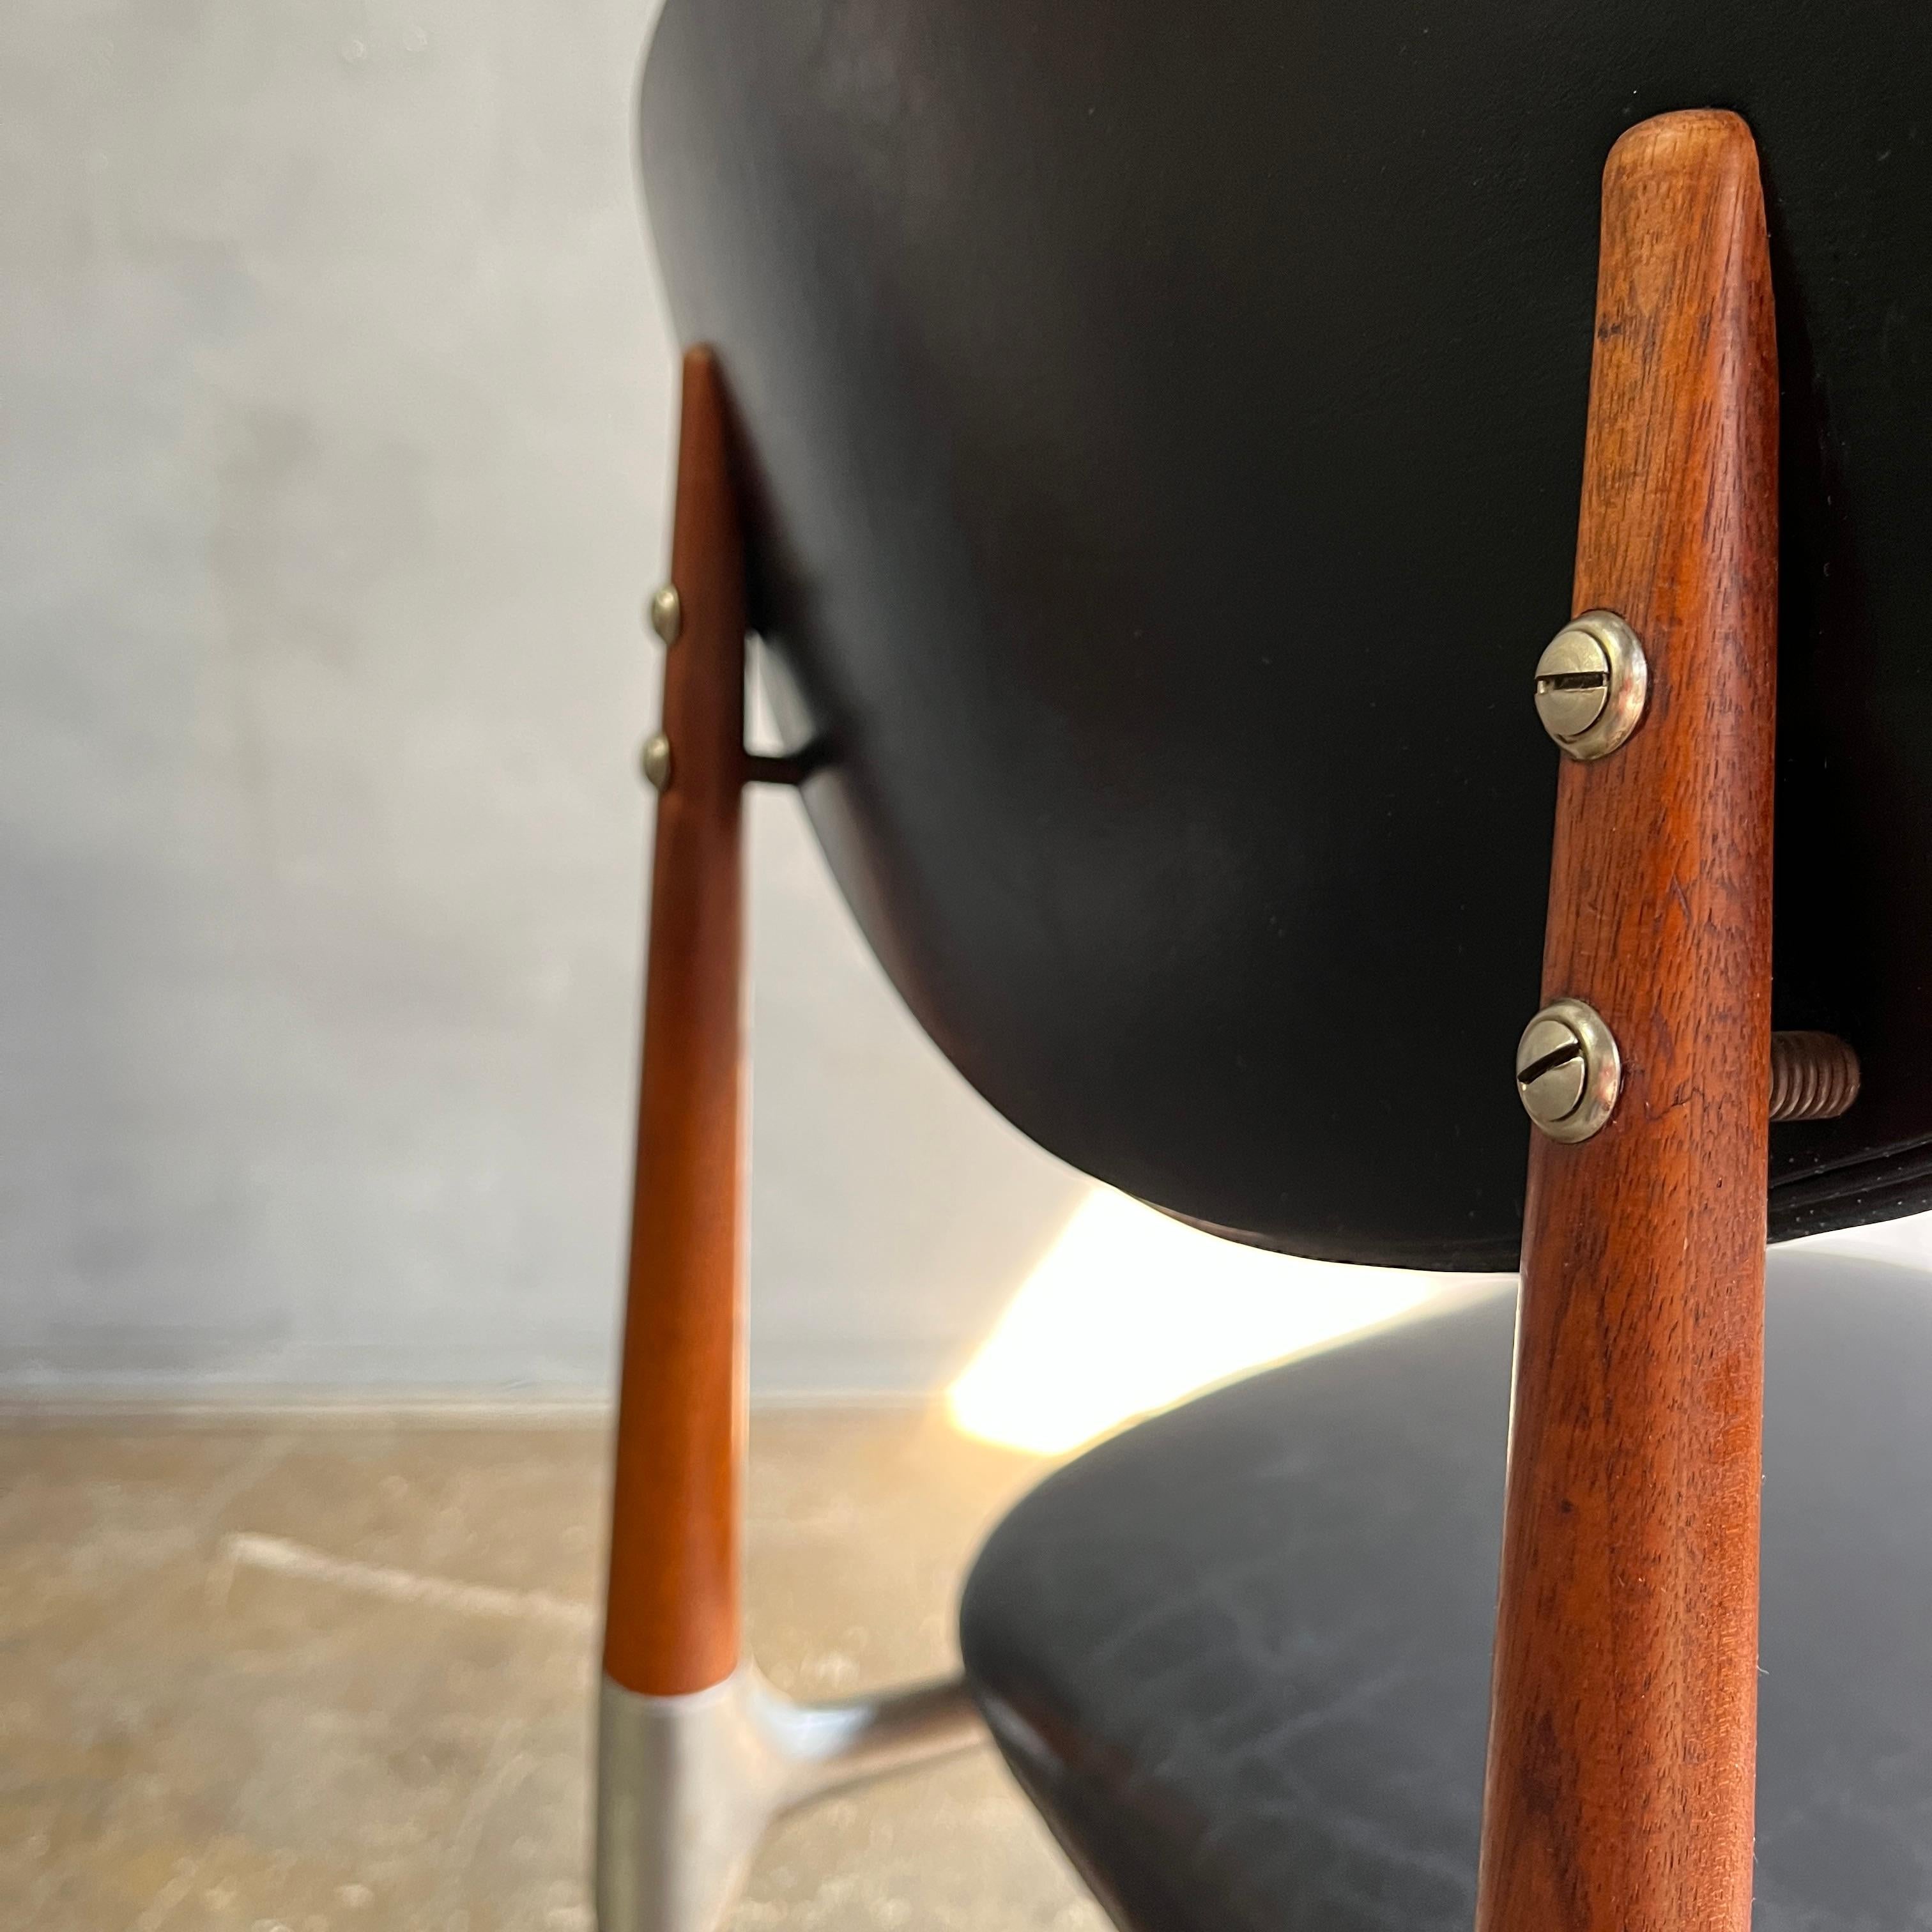 Dan Johnson für Shelby Williams Crucible Chair mit Rahmen aus Aluminiumguss und Holz auf gepolstertem Sitz und Rücken. Schöne Linien auf diesem seltenen Stuhl. In erstaunlichem Originalzustand.